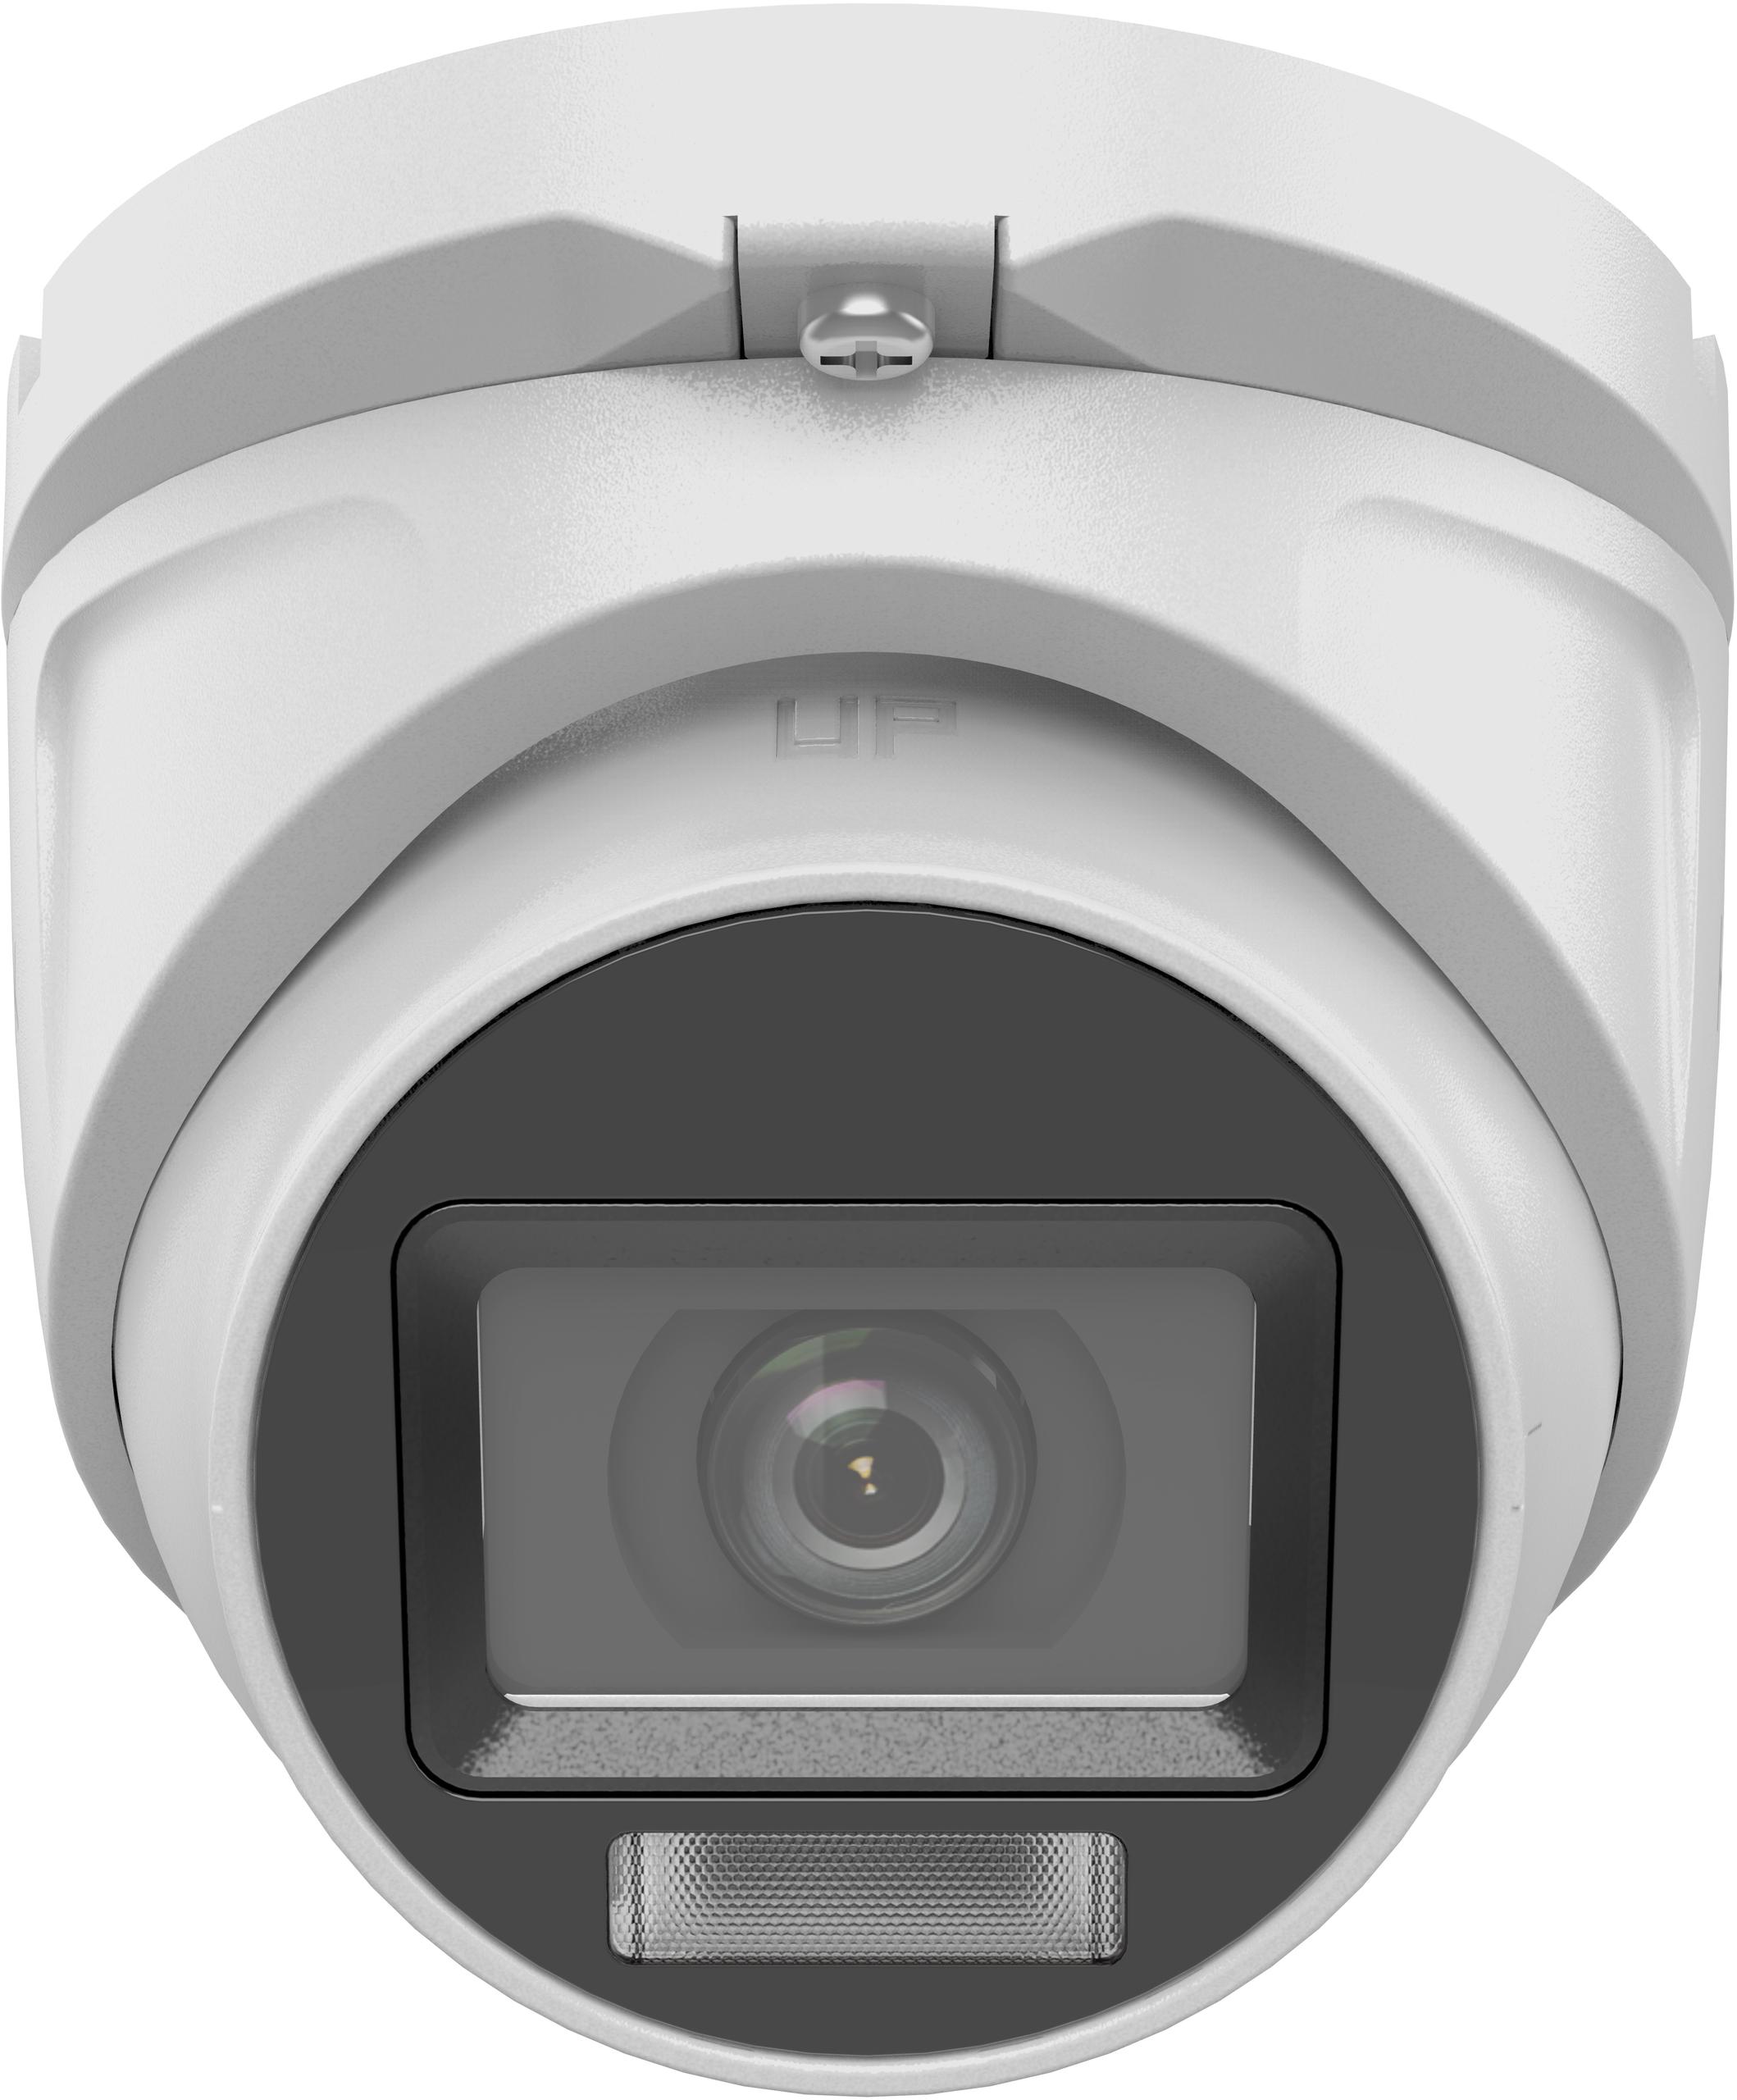 Kamera TVI  Hilook turret 2MP TVICAM-T2M-20DL 2.8mm- nocne widzenie do 20m dzięki opcji dual light